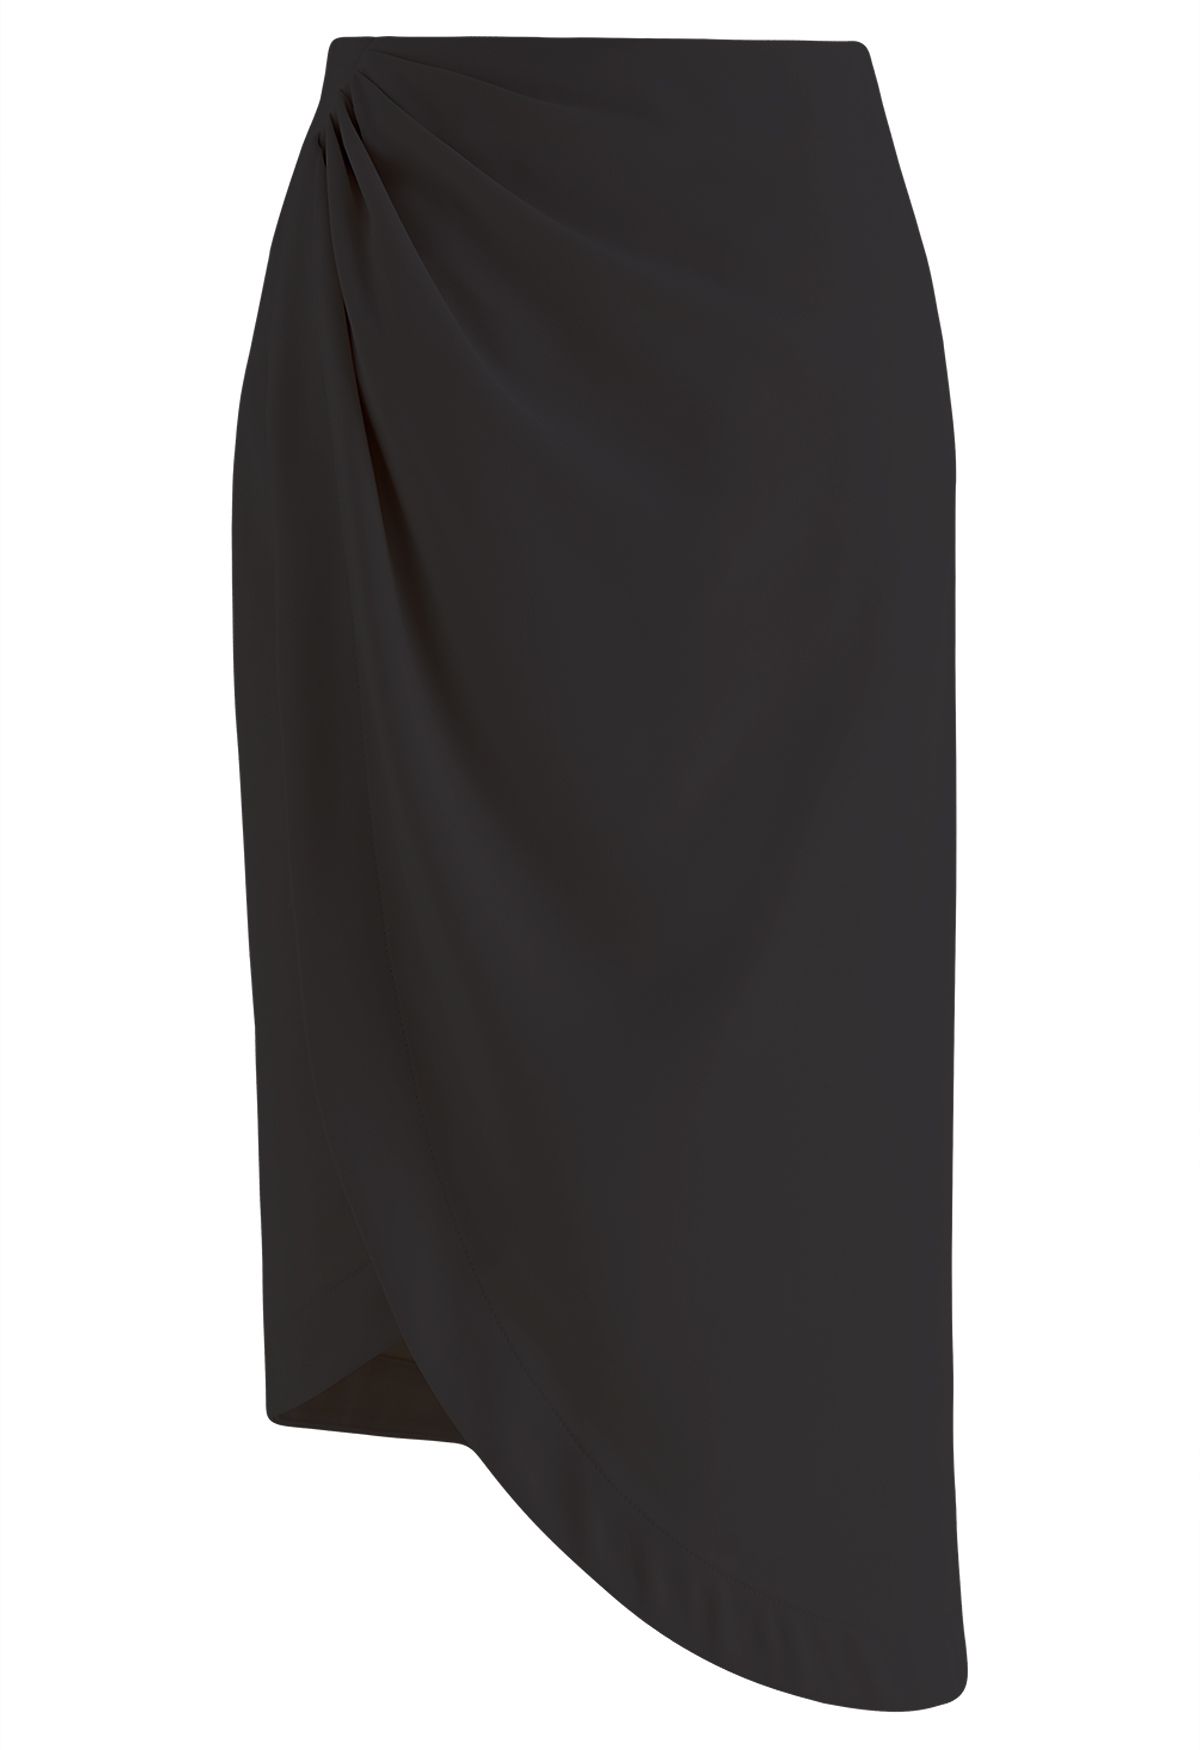 Oblique Tulip Hem Midi Skirt in Black - Retro, Indie and Unique Fashion